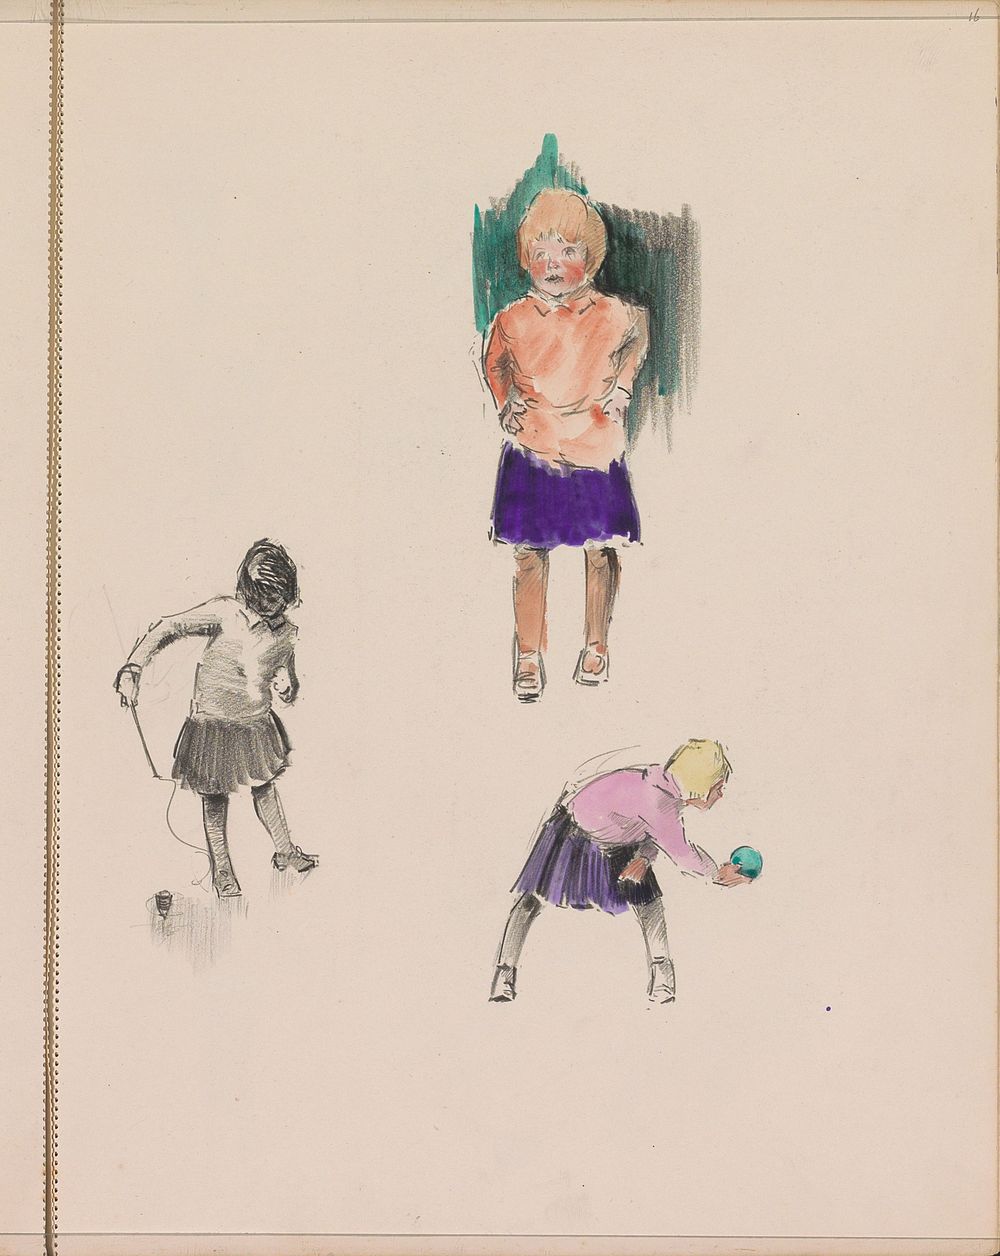 Meisjes spelend met een tol en bal (c. 1917 - c. 1919) by Otto Verhagen I